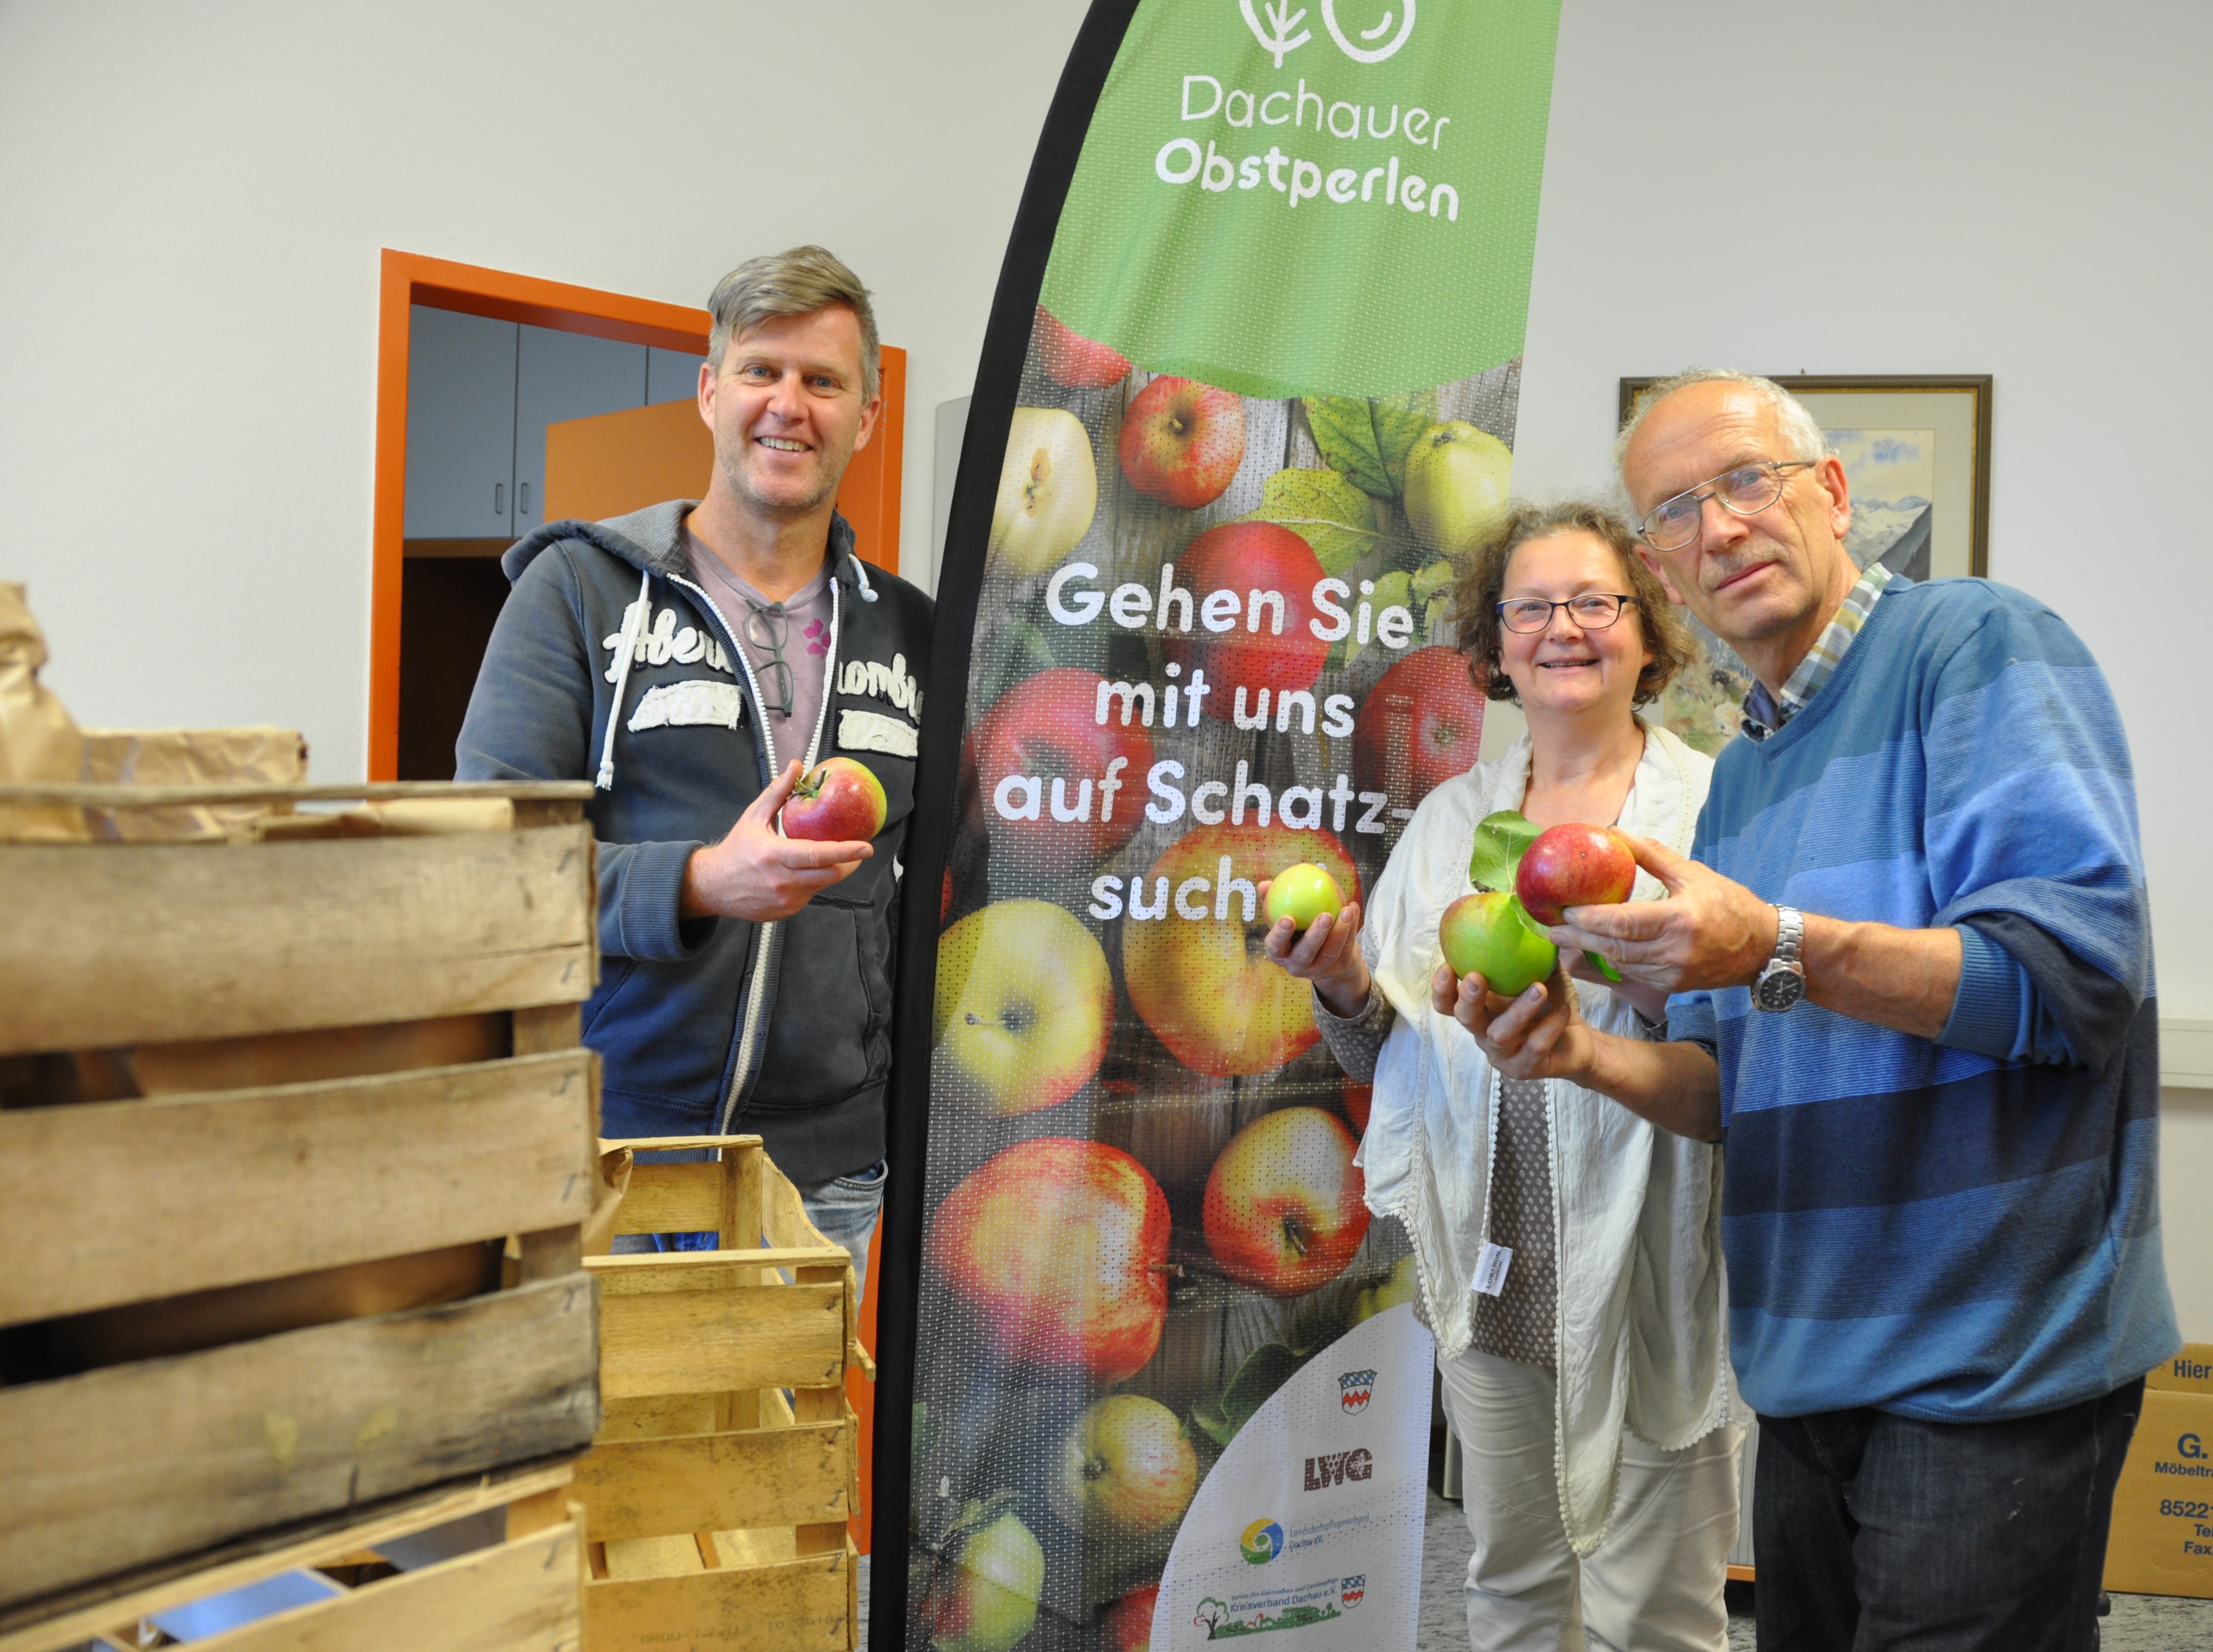 Der Landkreis Dachau ist wieder auf Schatzsuche: „Dachauer Obstperlen“ gesucht!